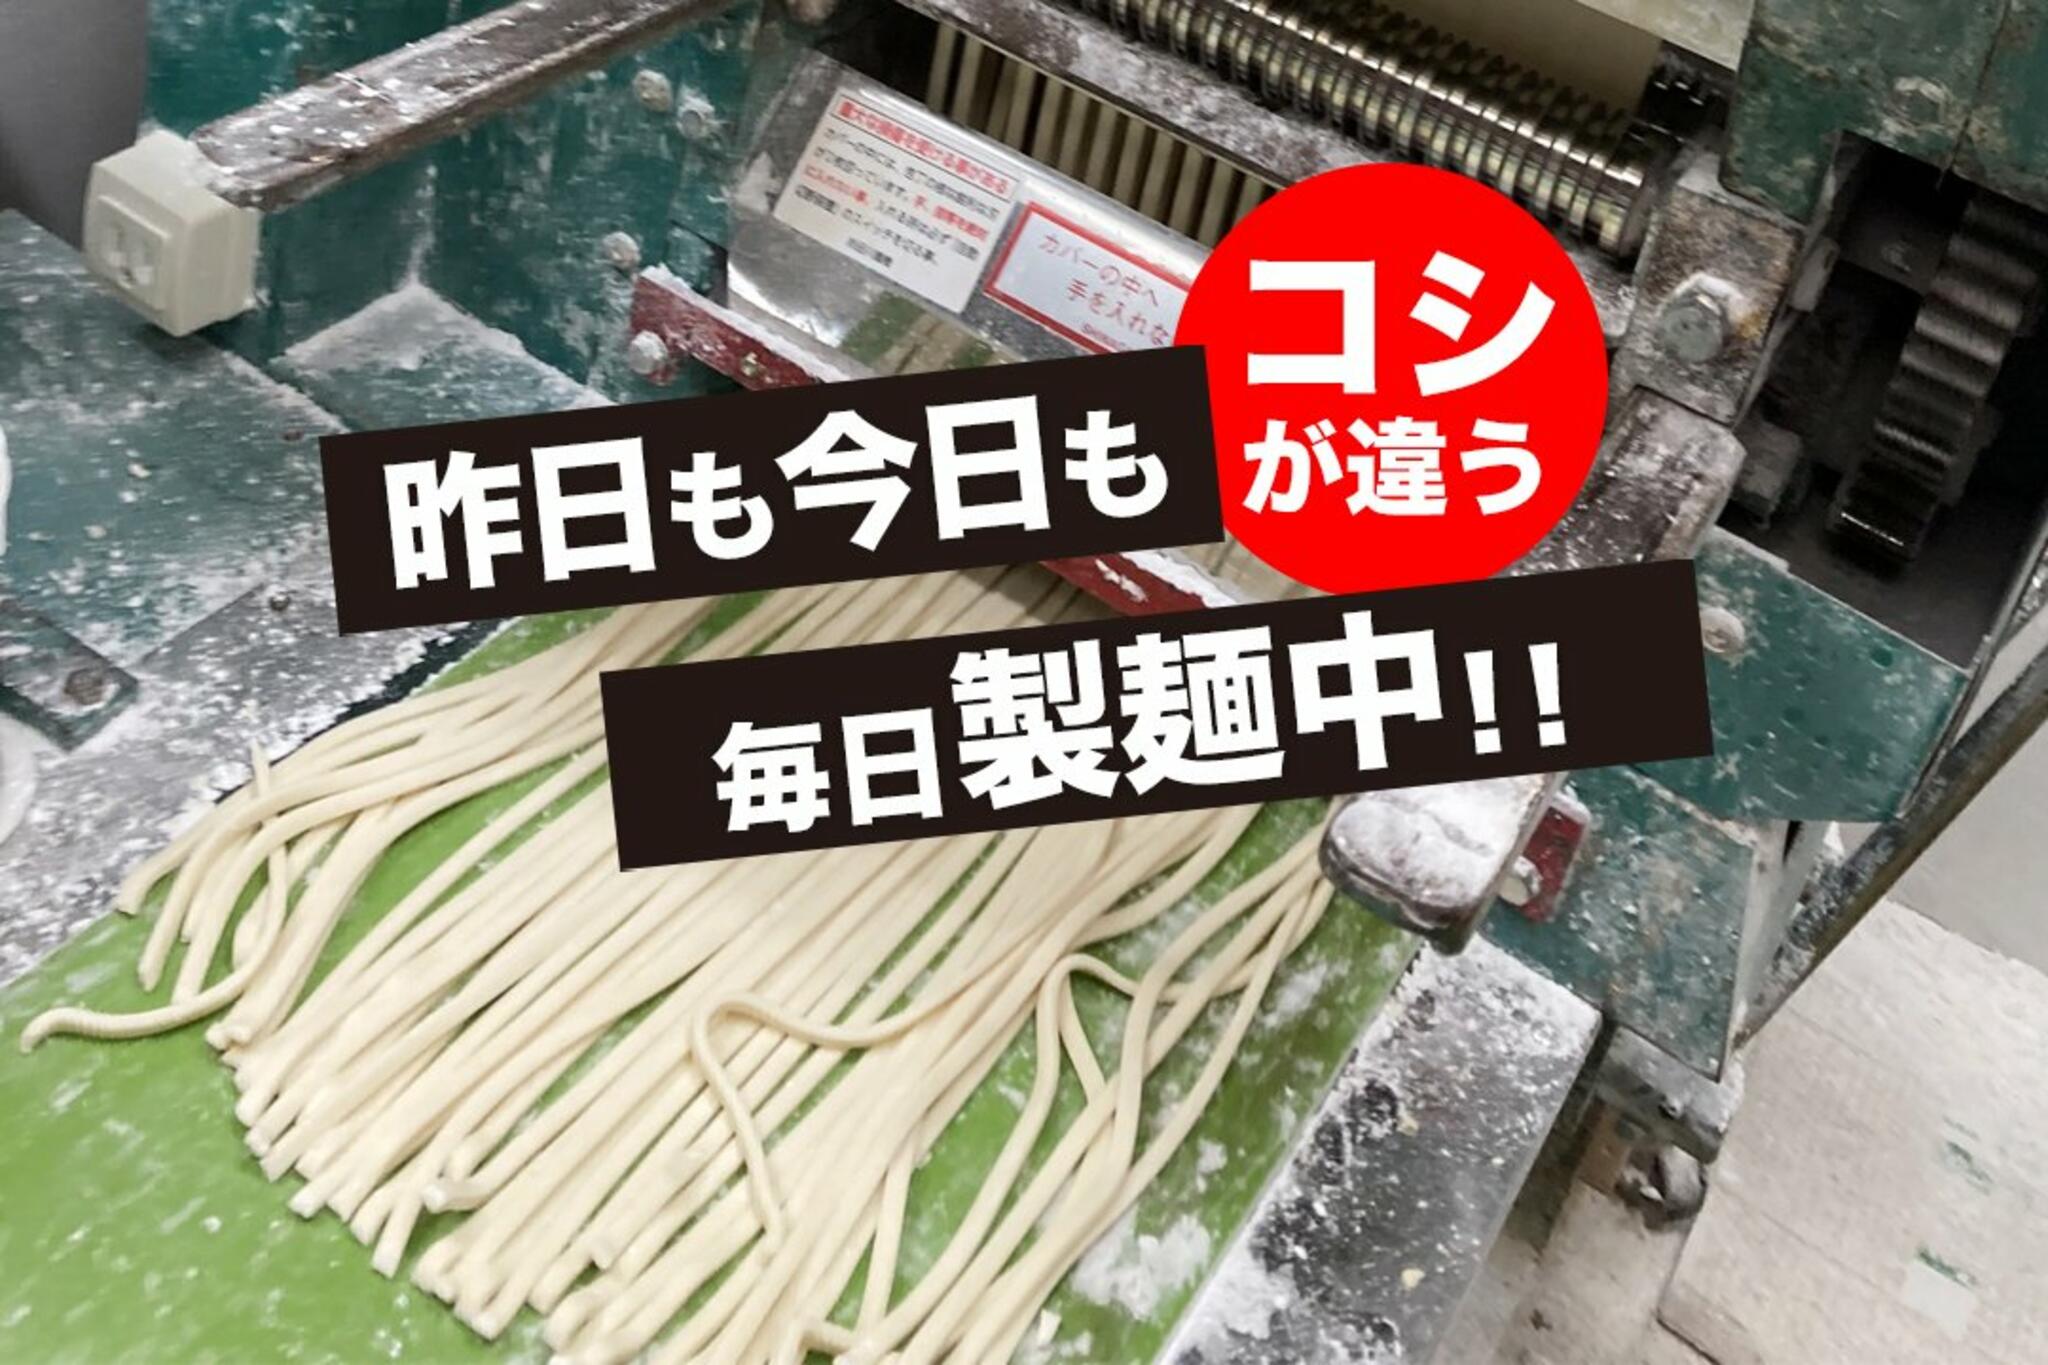 かばのおうどん 横浜元町本店からのお知らせ(昨日も今日も、毎日製麺中！)に関する写真